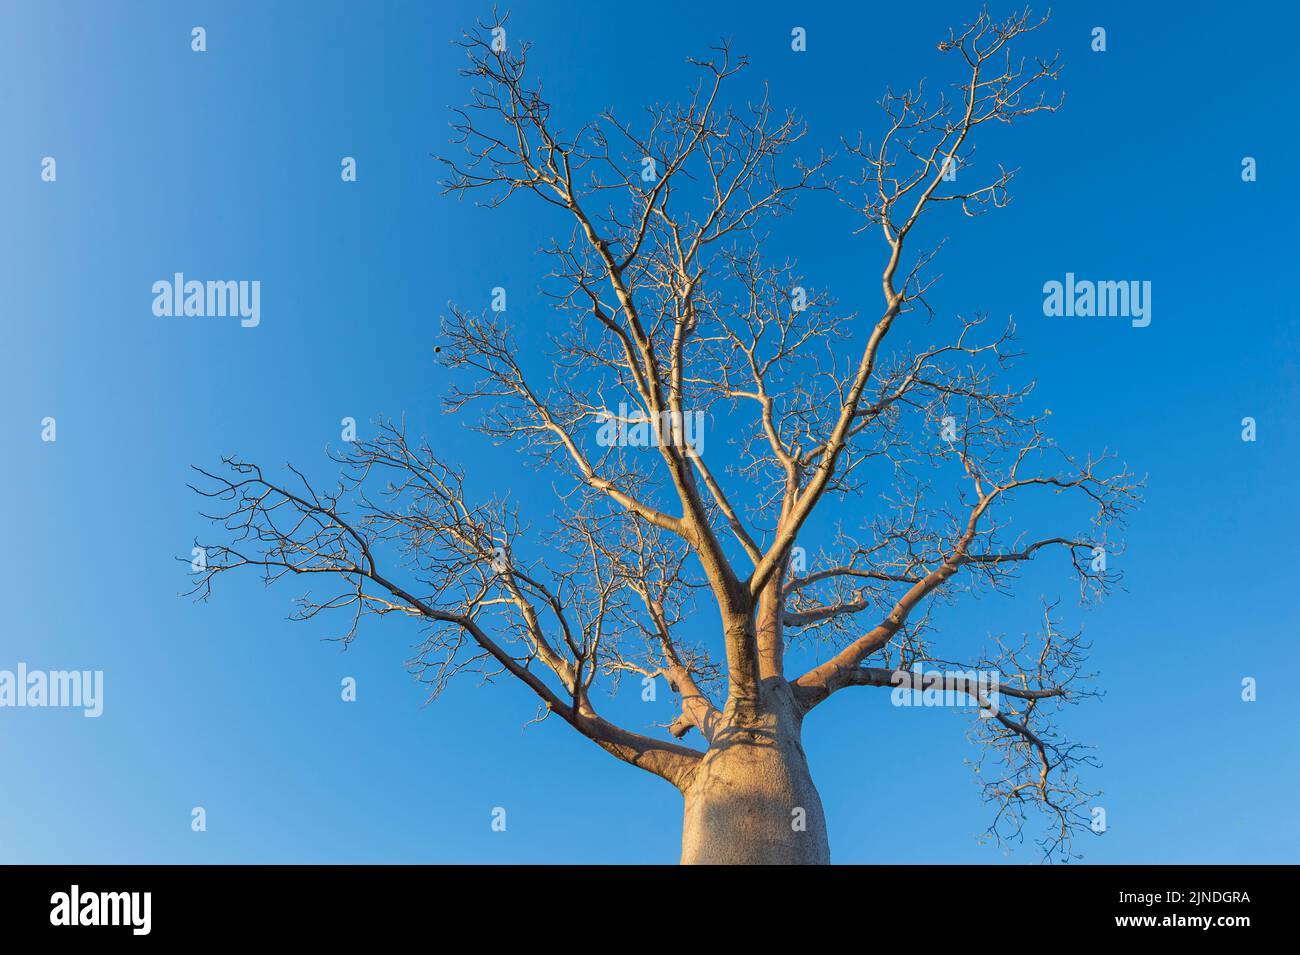 Canino sin hojas (Adansonia gregorii) contra un cielo azul, Parque Nacional Judbarra/Gregory, Territorio del Norte, Territorio del Norte, Australia Foto de stock